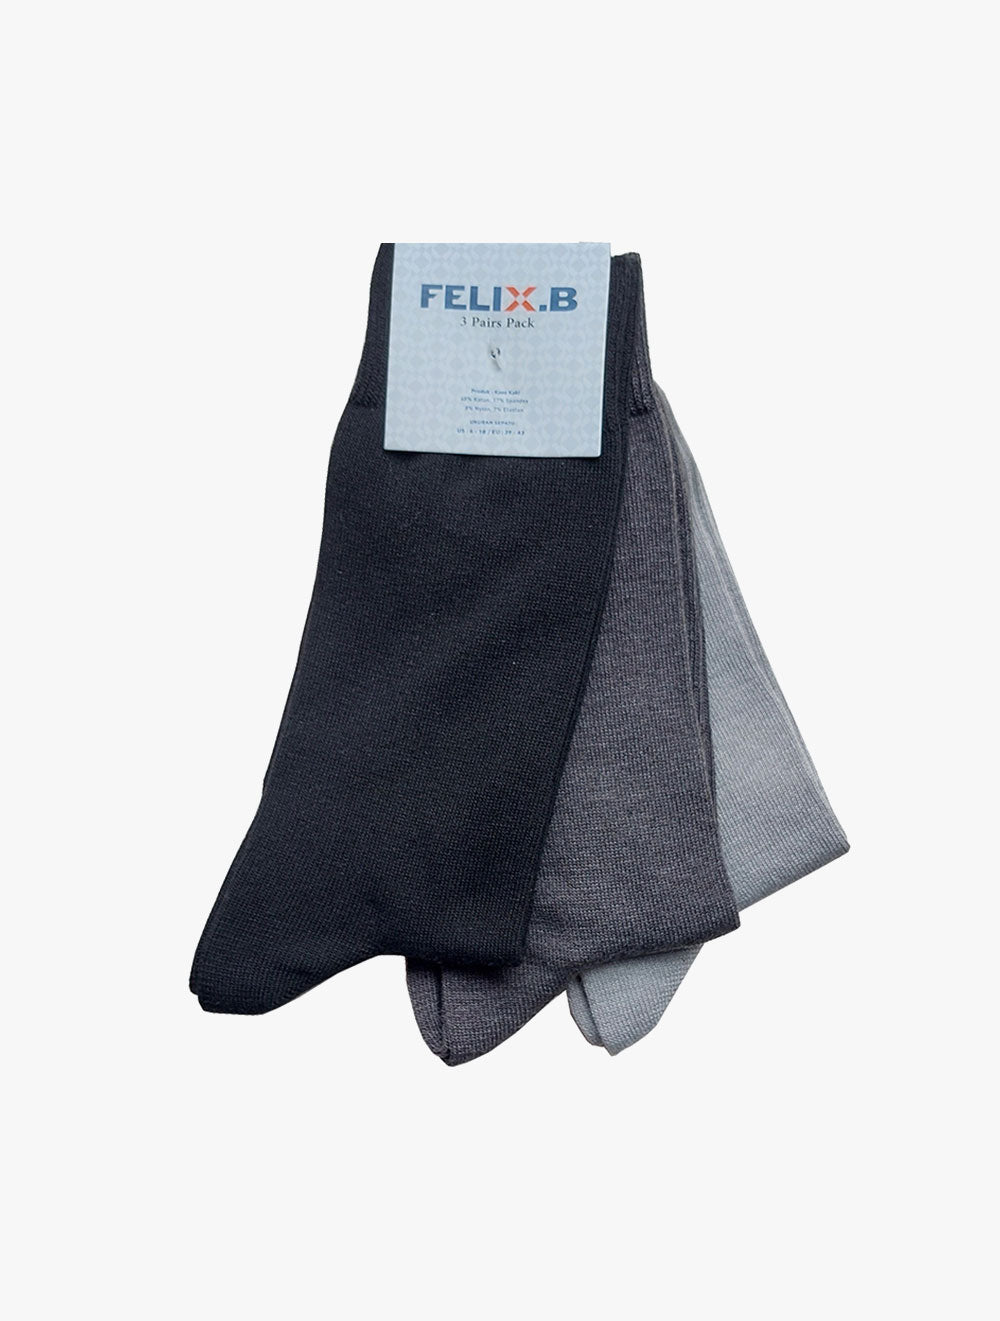 FELIX.B
Socks 3in1 - FBSC026